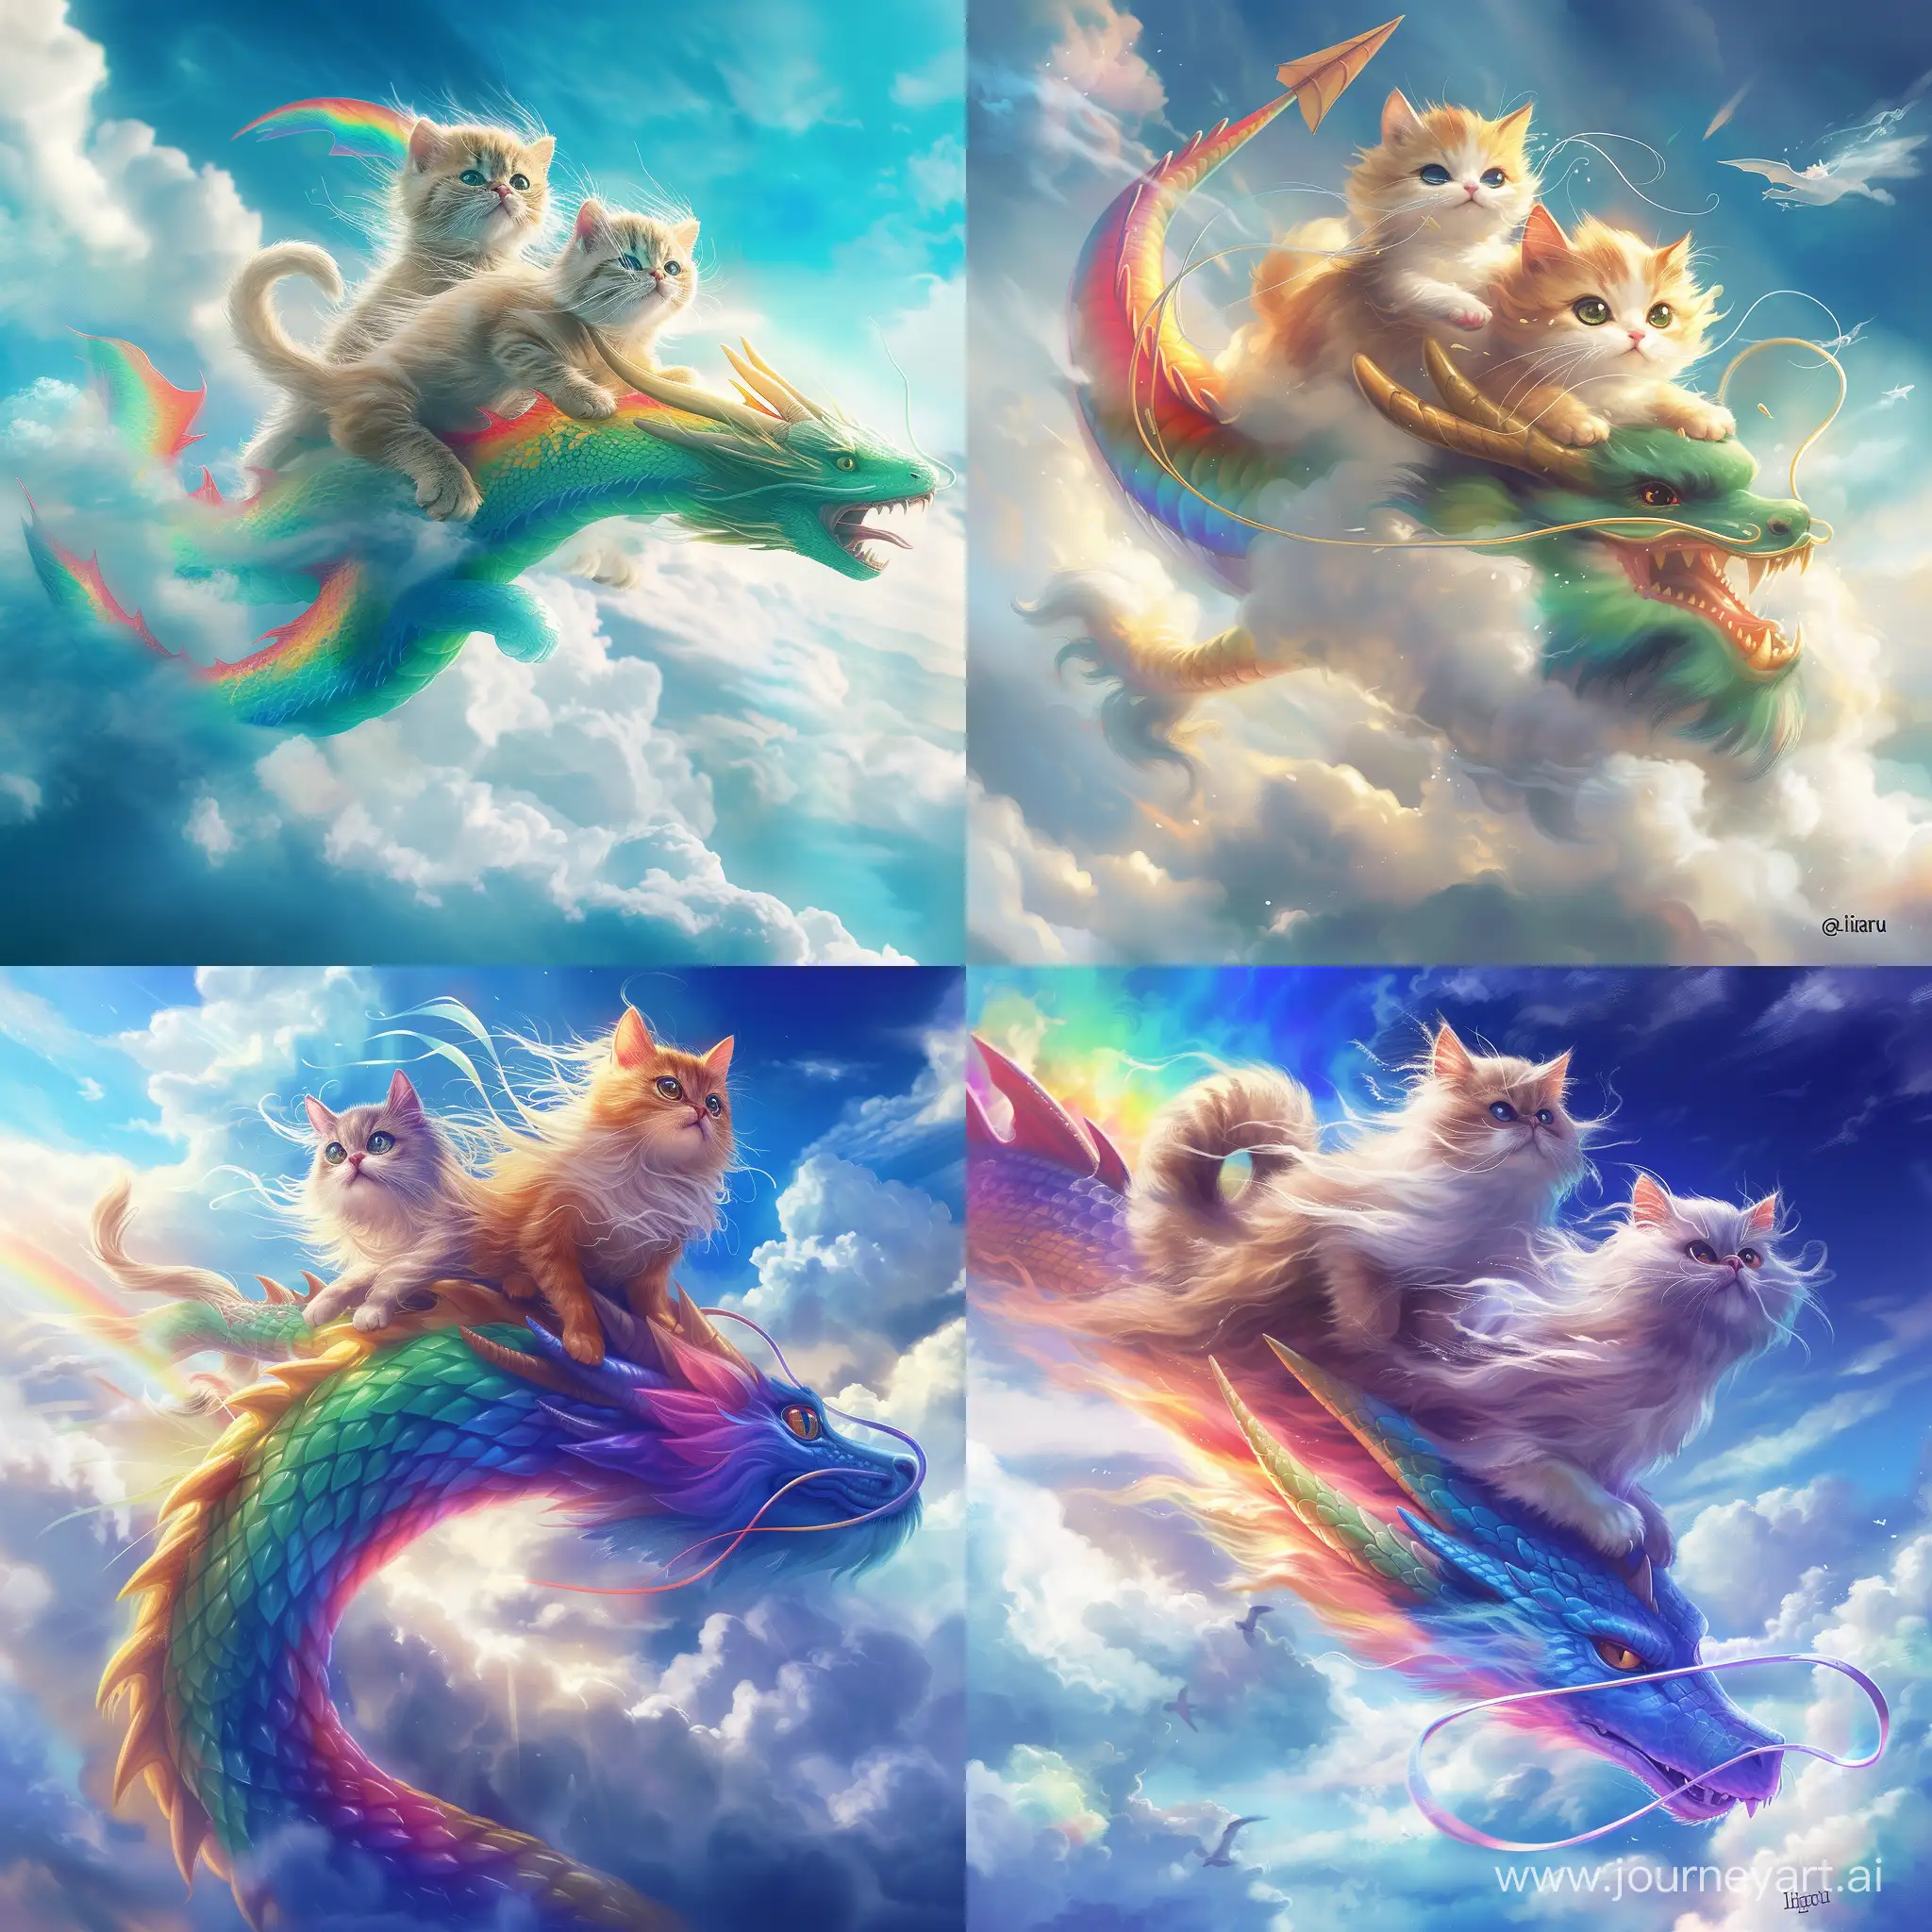 ‼️‼️ (сериал коты 79 серия) полет на драконе)...   Два  кота верхом на спине радужного дракона летят через облака , сильный ветер, шерсть у котов растрепана, фотореализм,  эмоции, фотореалистично, профессиональное фото, 32k, высокое разрешение, высокая детализация, ISO 200, яркое освещение, f/16, 1/300s @liaru